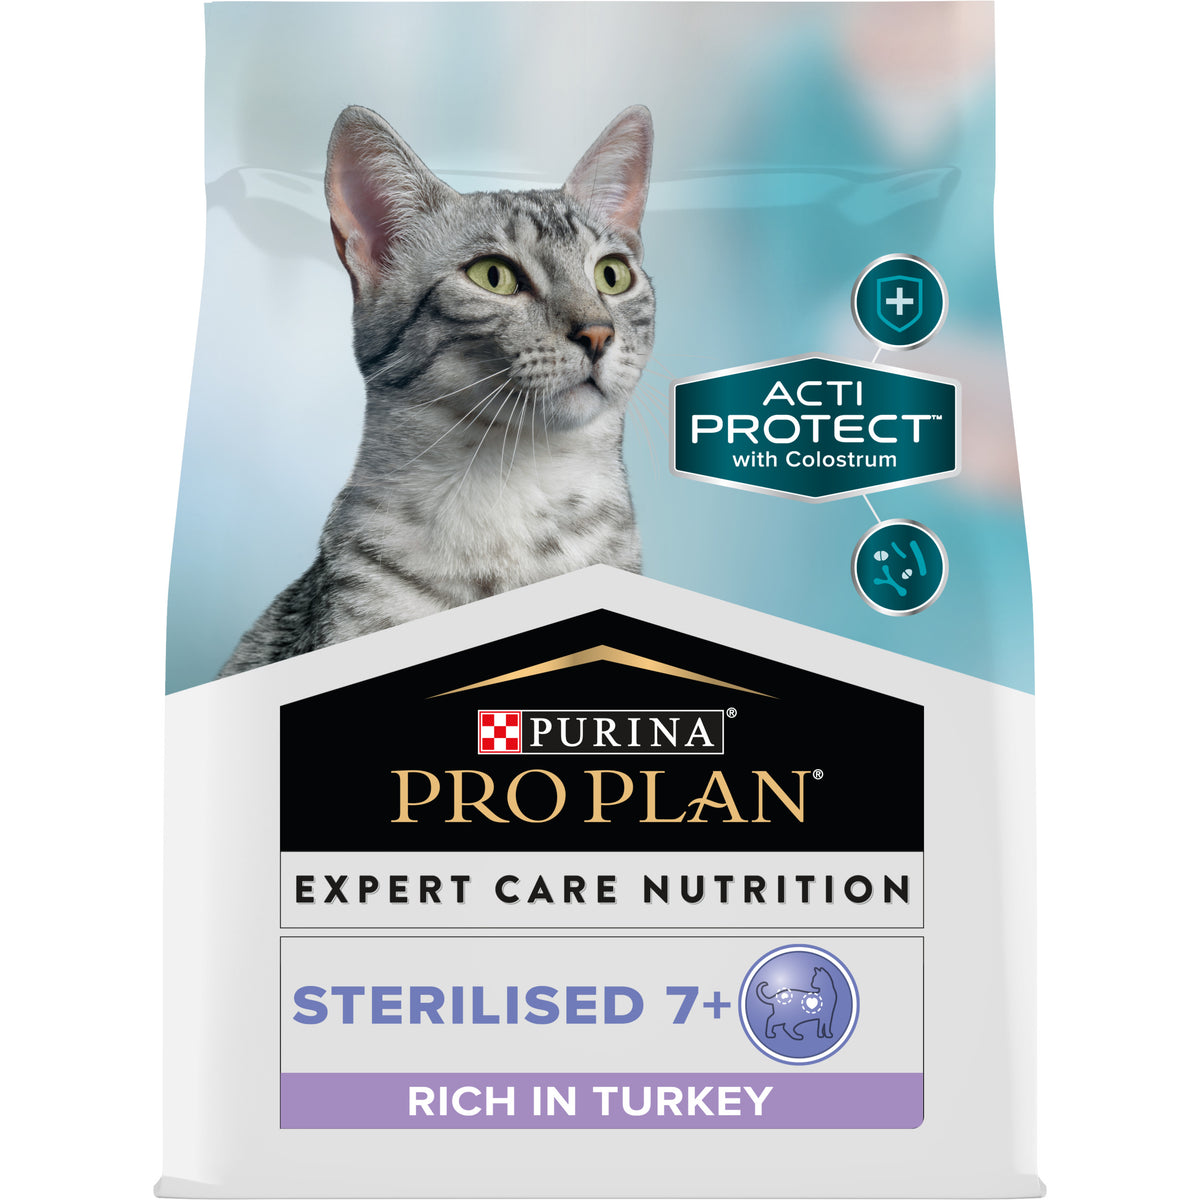 PURINA® PRO PLAN® Expert Care Nutrition - Feline Sterilised 7+ - Turkey